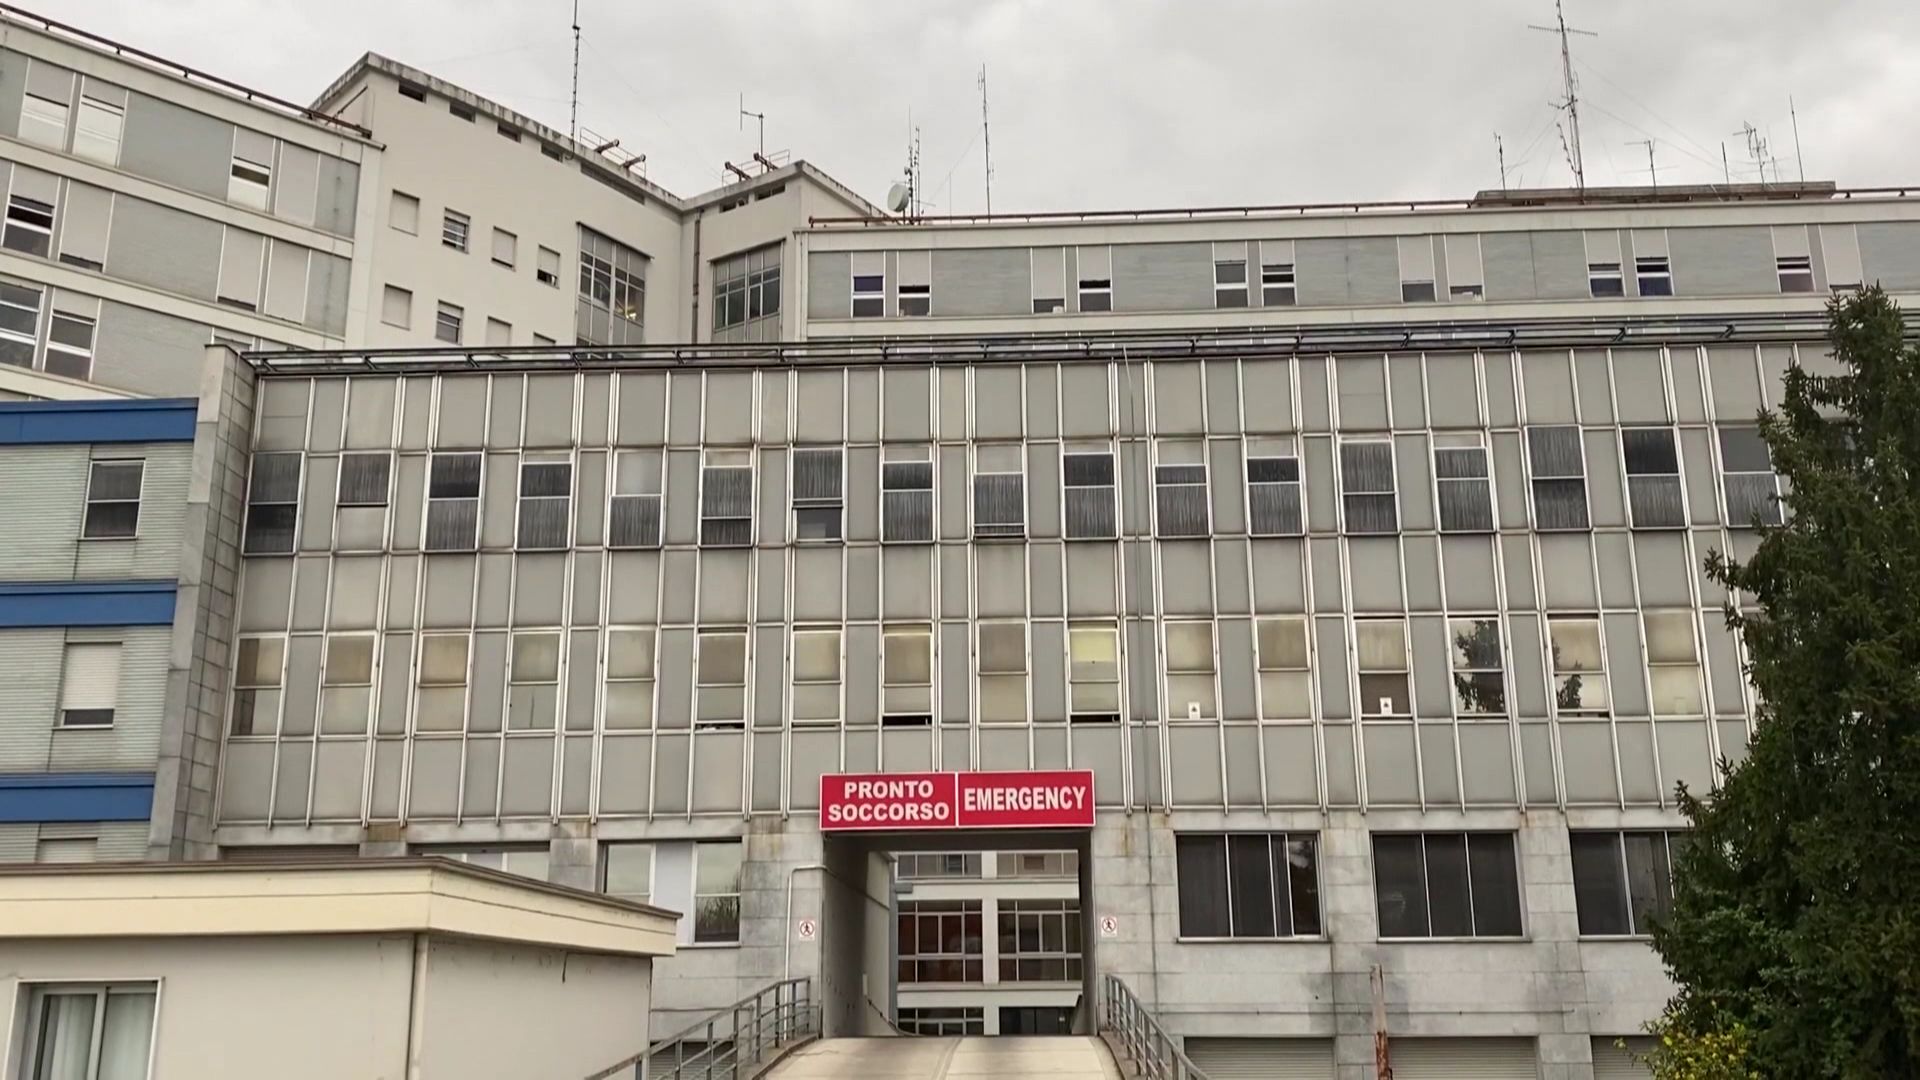 Reportage au cœur de l’hôpital de Crémone en Italie.